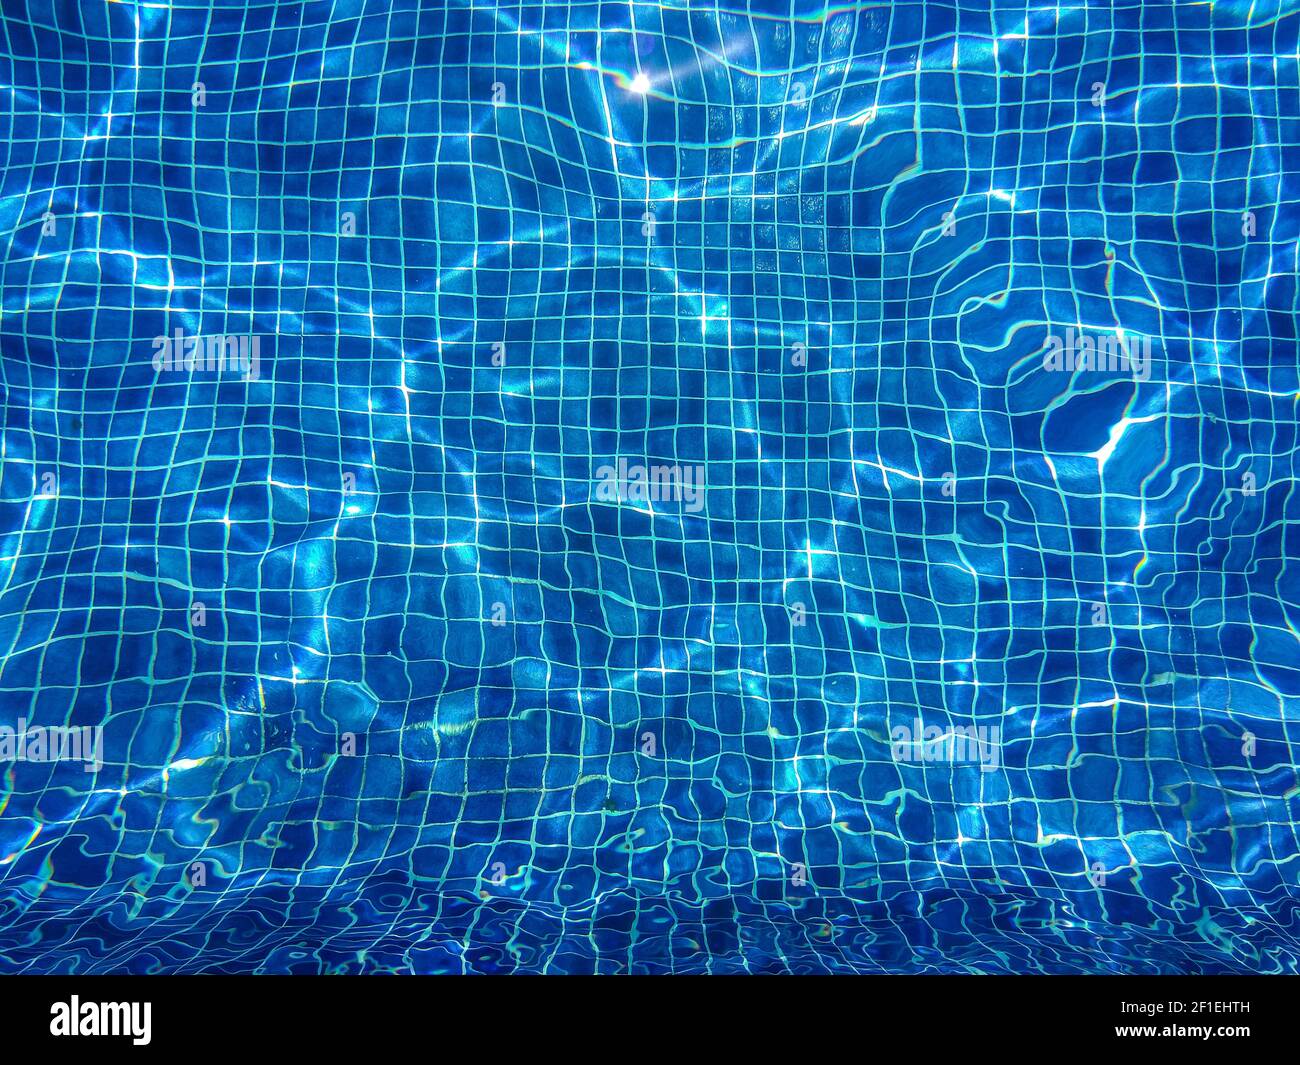 Zusammenfassung Hintergrund, Wasser Wellen und Linien des blauen Kacheln im Pool mit glänzenden Sonnenlicht Reflektion Stockfoto